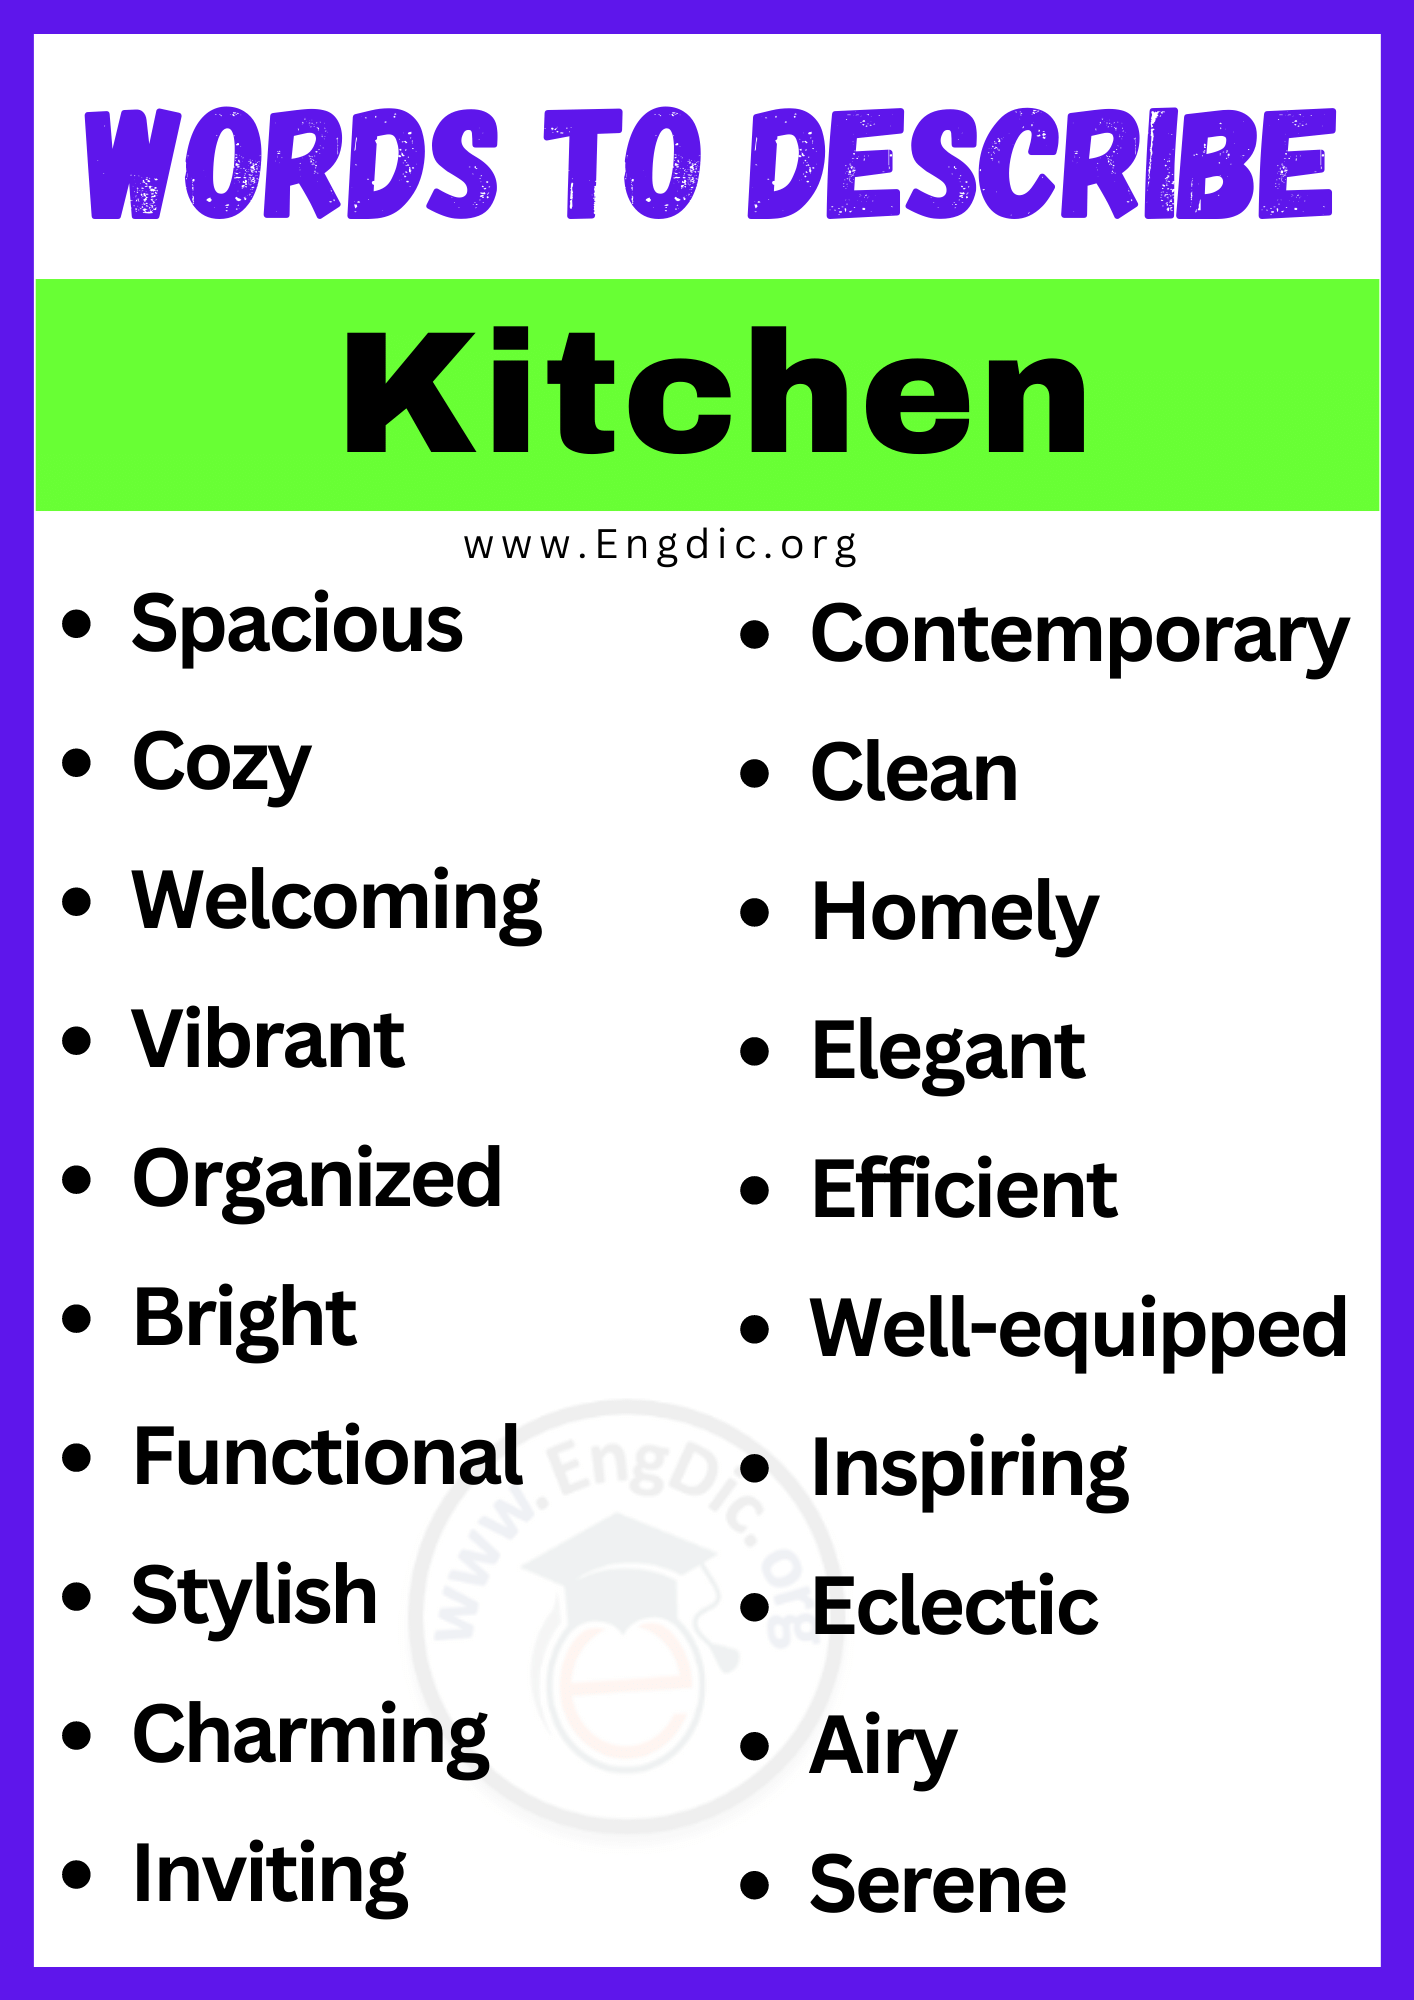 Words to Describe Kitchen